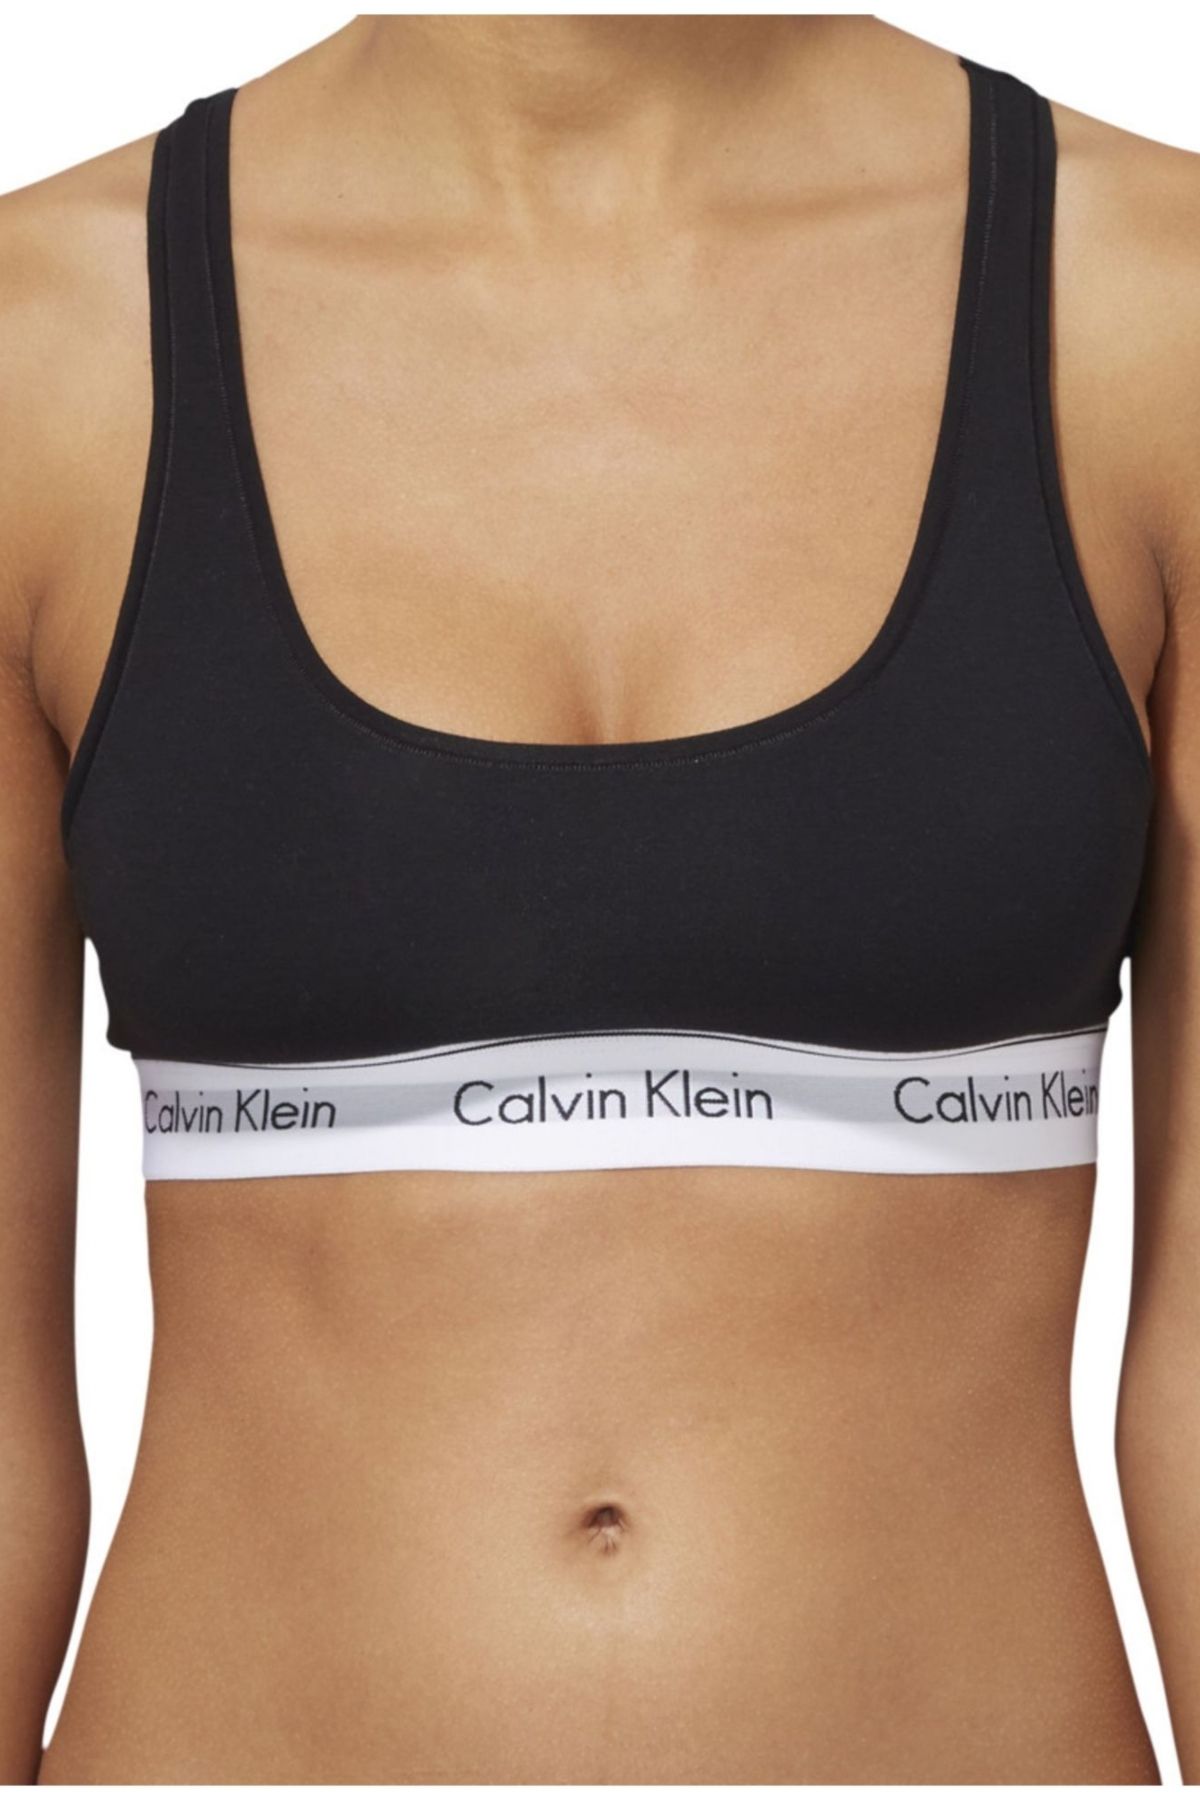 Bras Calvin Klein Modern Cotton Light Lined Bralette (Full Cup